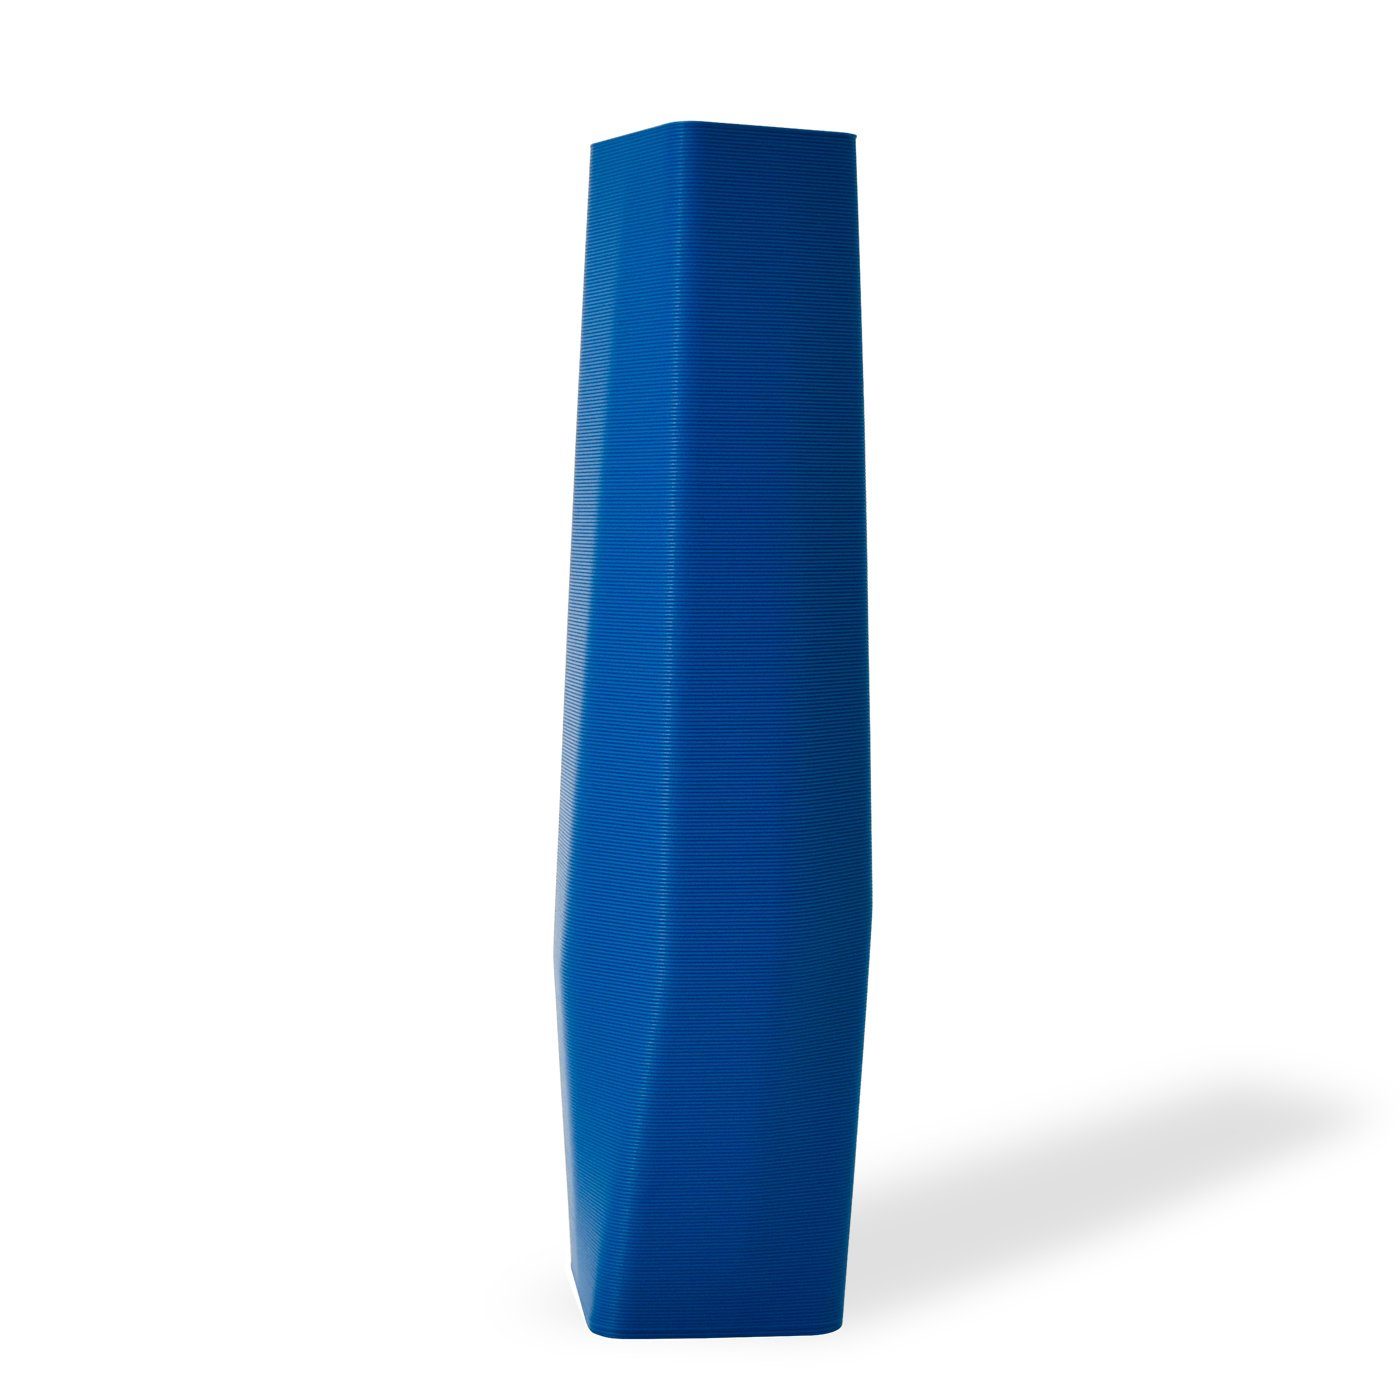 Shapes - Decorations Dekovase the vase - square (basic), 3D Vasen, viele Farben, 100% 3D-Druck (Einzelmodell, 1 Vase), Wasserdicht; Leichte Struktur innerhalb des Materials (Rillung) Blau